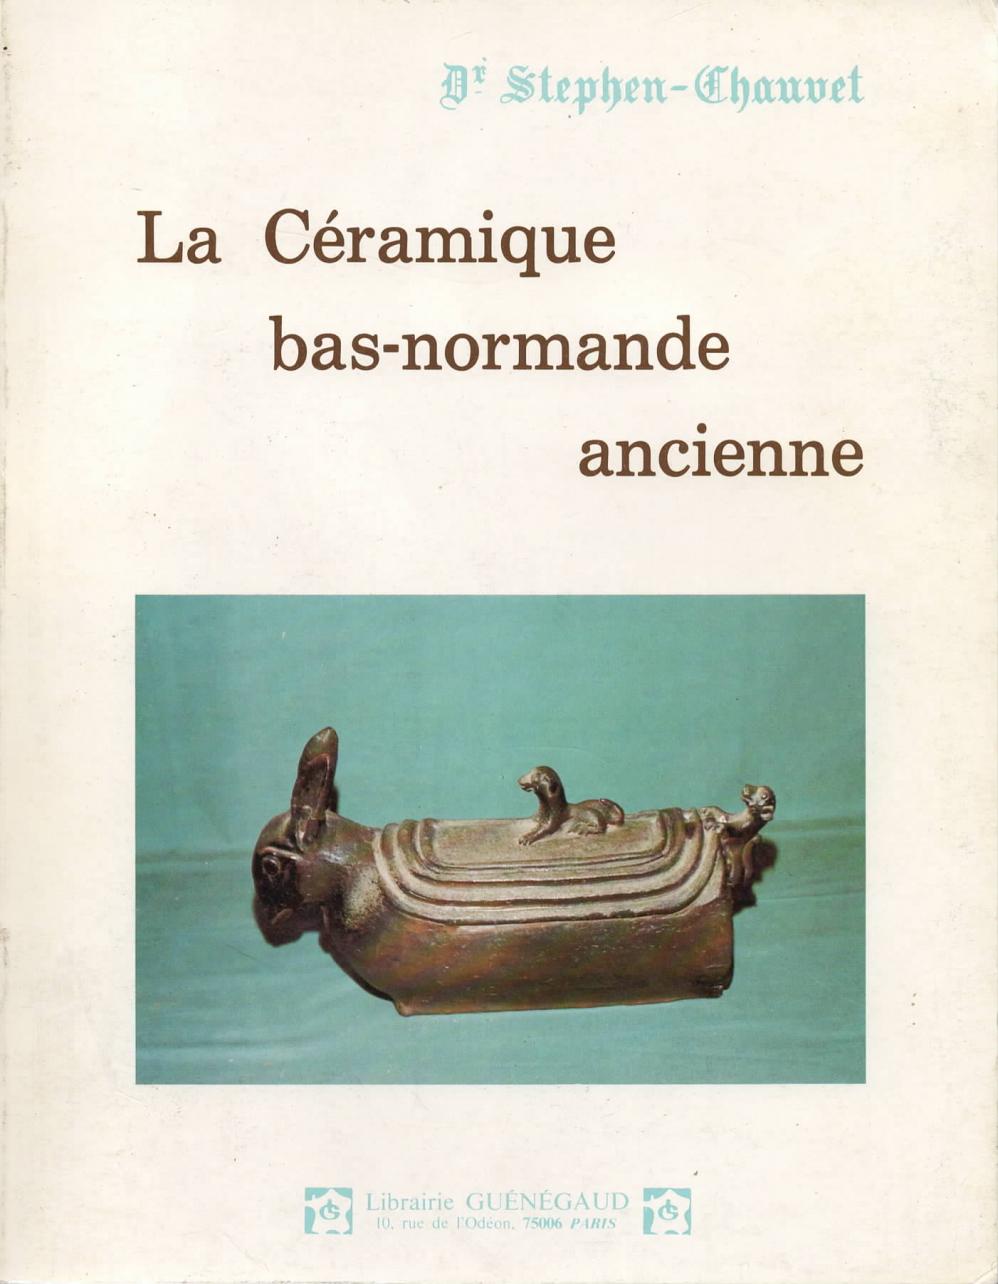 La céramique bas-normande ancienne / Stephen Chauvet